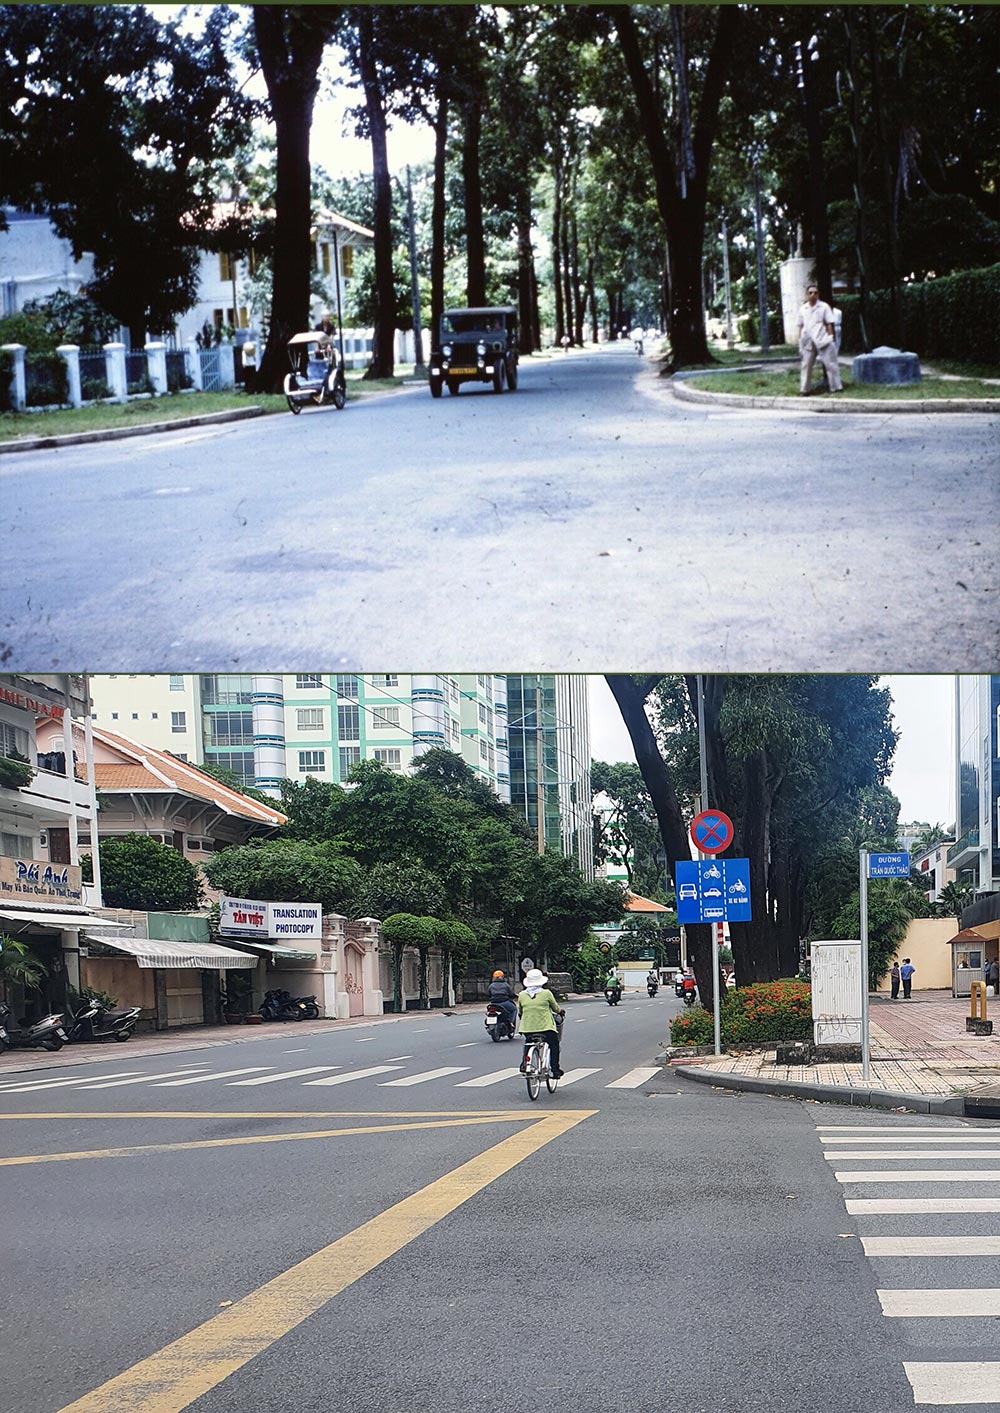 Hình Ảnh Sài Gòn Xưa Và Nay Chụp Cùng 1 Vị Trí: Loanh Quanh Góc Phố Quận Ba